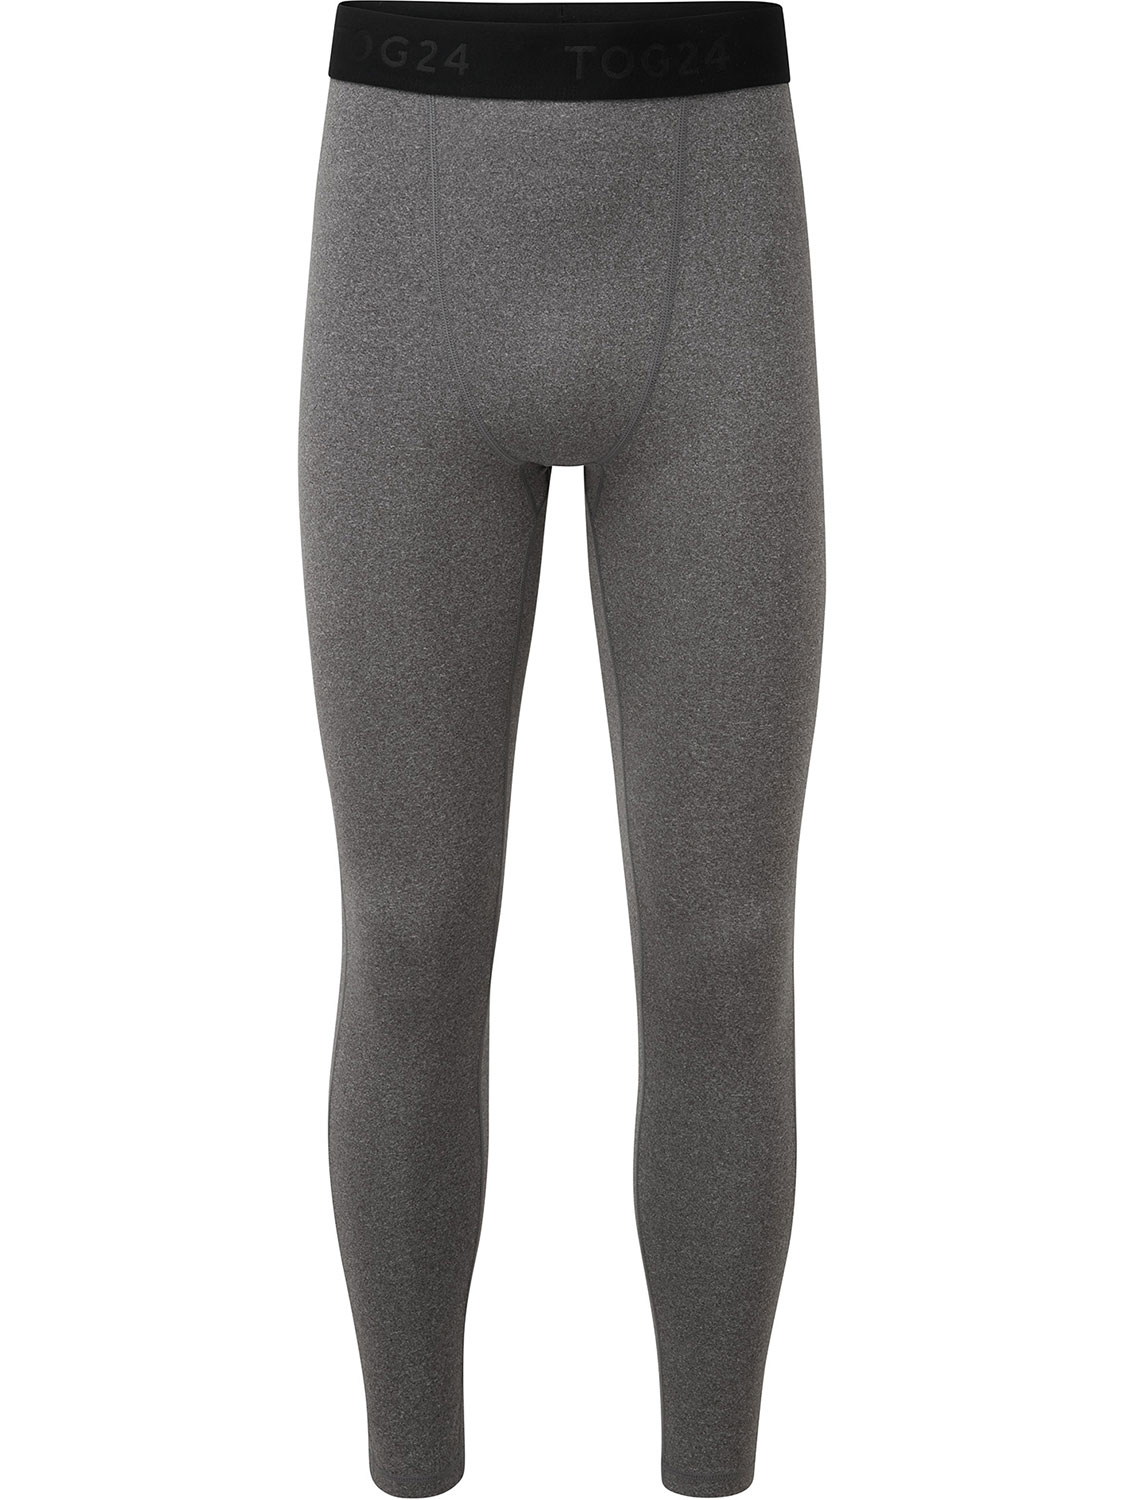 Snowdon Thermal Leggings - Size: XL Men’s Grey Tog24